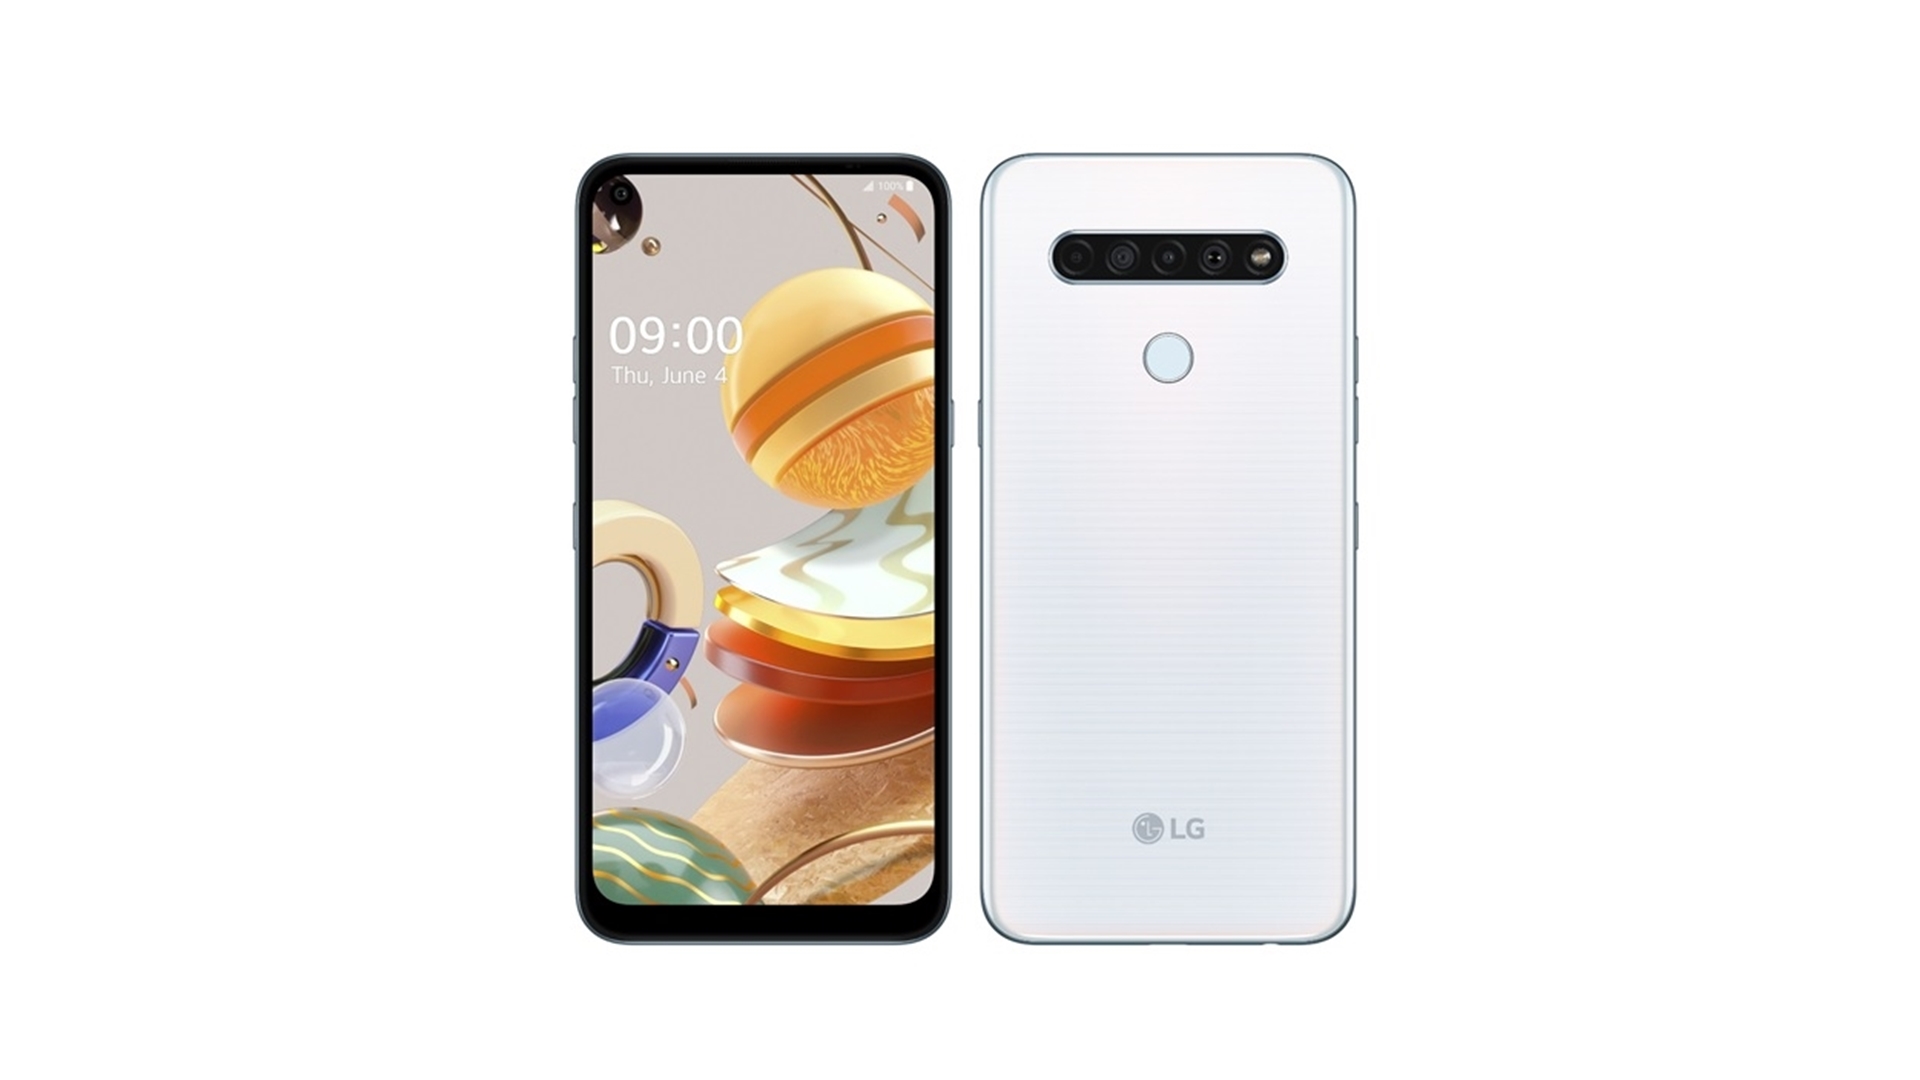 LG전자가 캐나다에 현지시간 4일 실속형 스마트폰 2종을 출시하며 실속형 스마트폰 시장 공략에 가속도를 낸다. LG K61 제품 사진